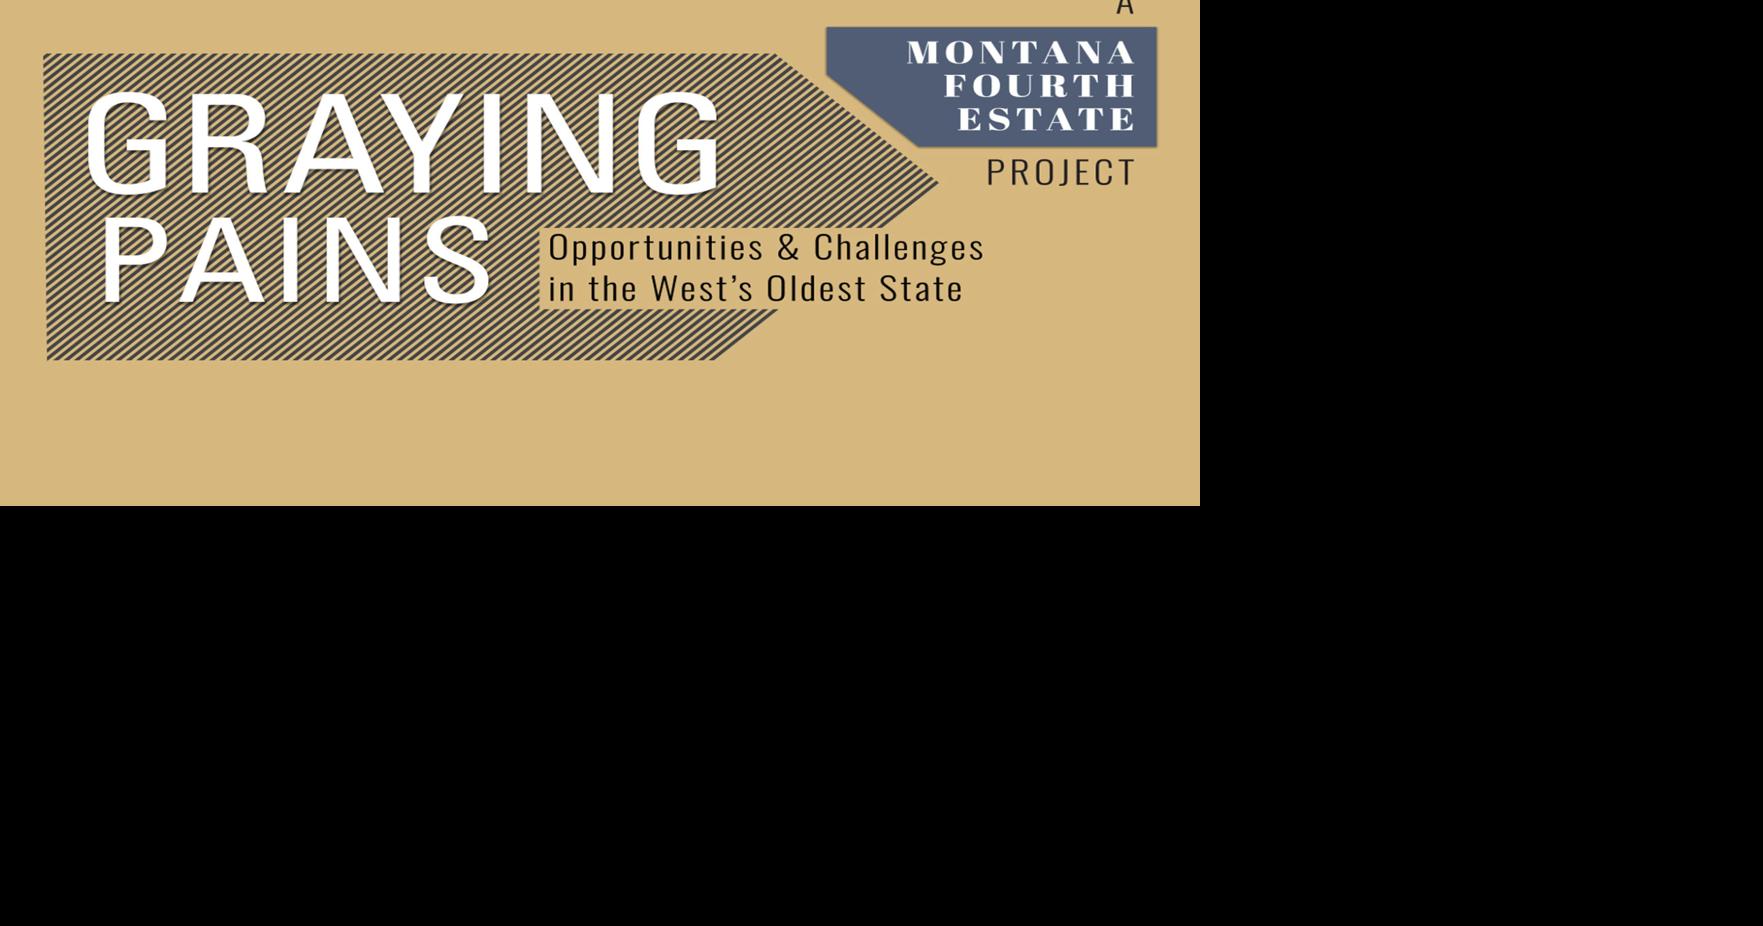 montana free press census